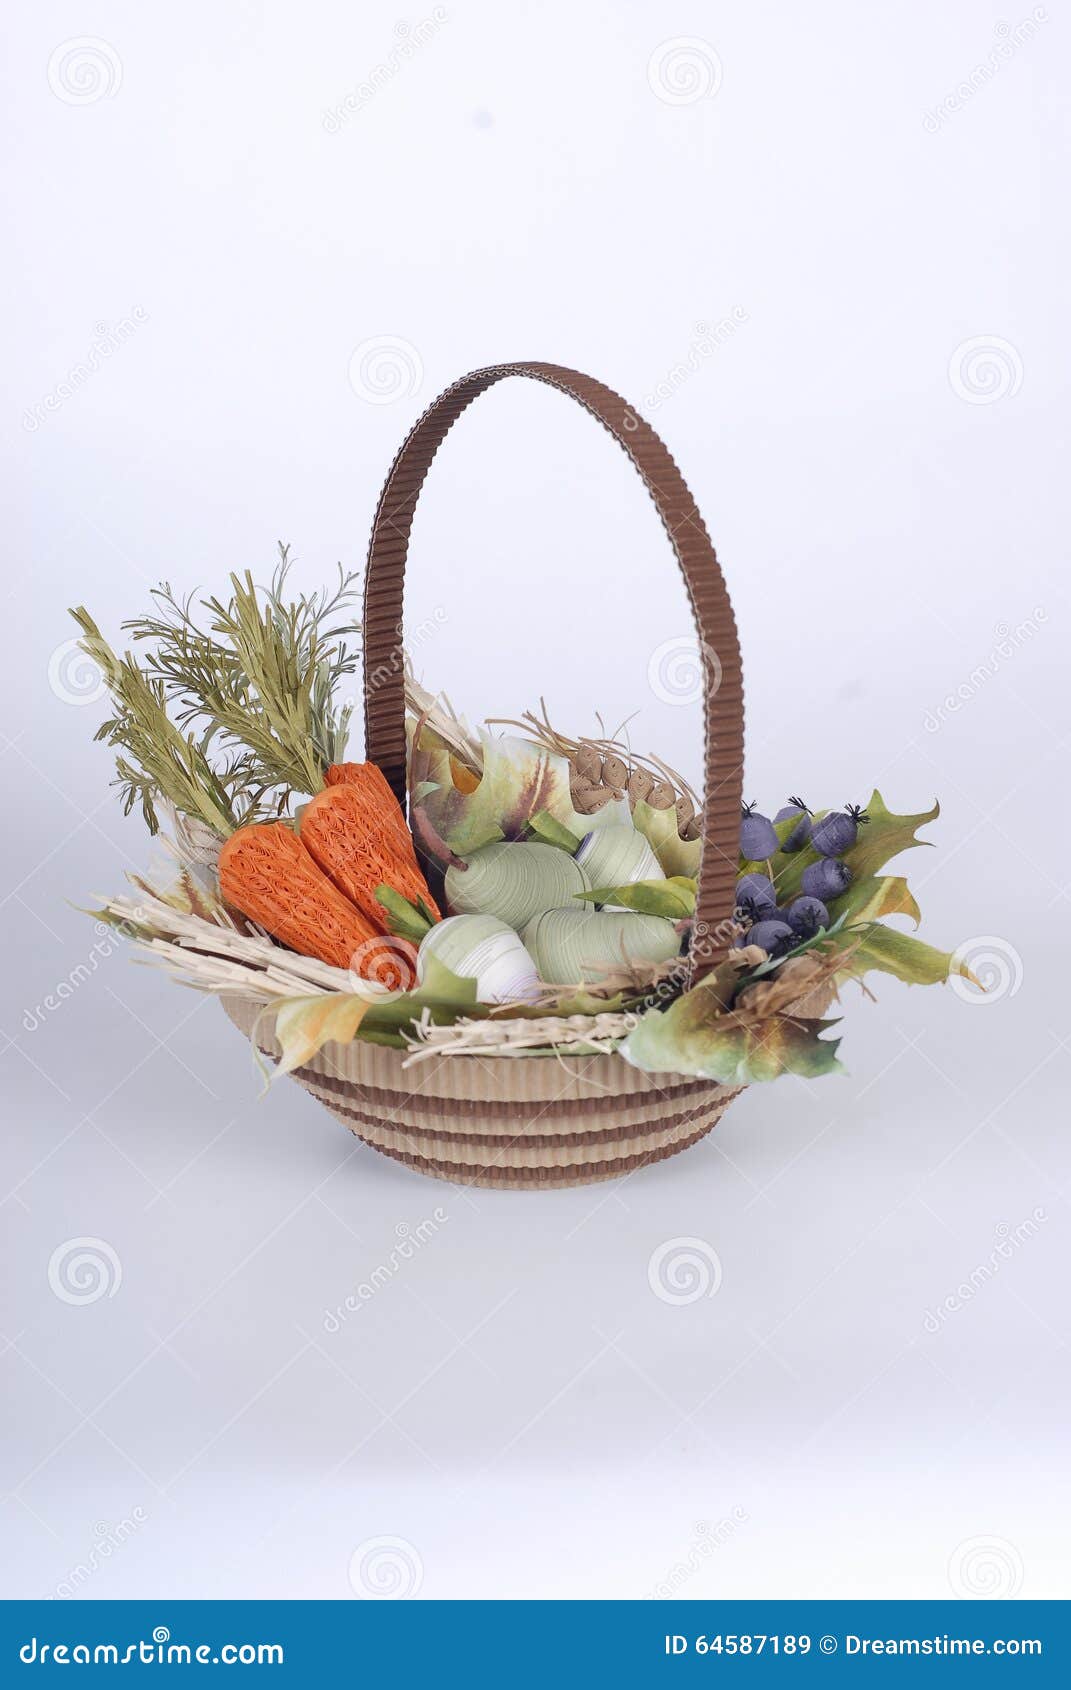 Russian Paper Vegetables Basket Stock Image - Image of basket, elements:  64587189